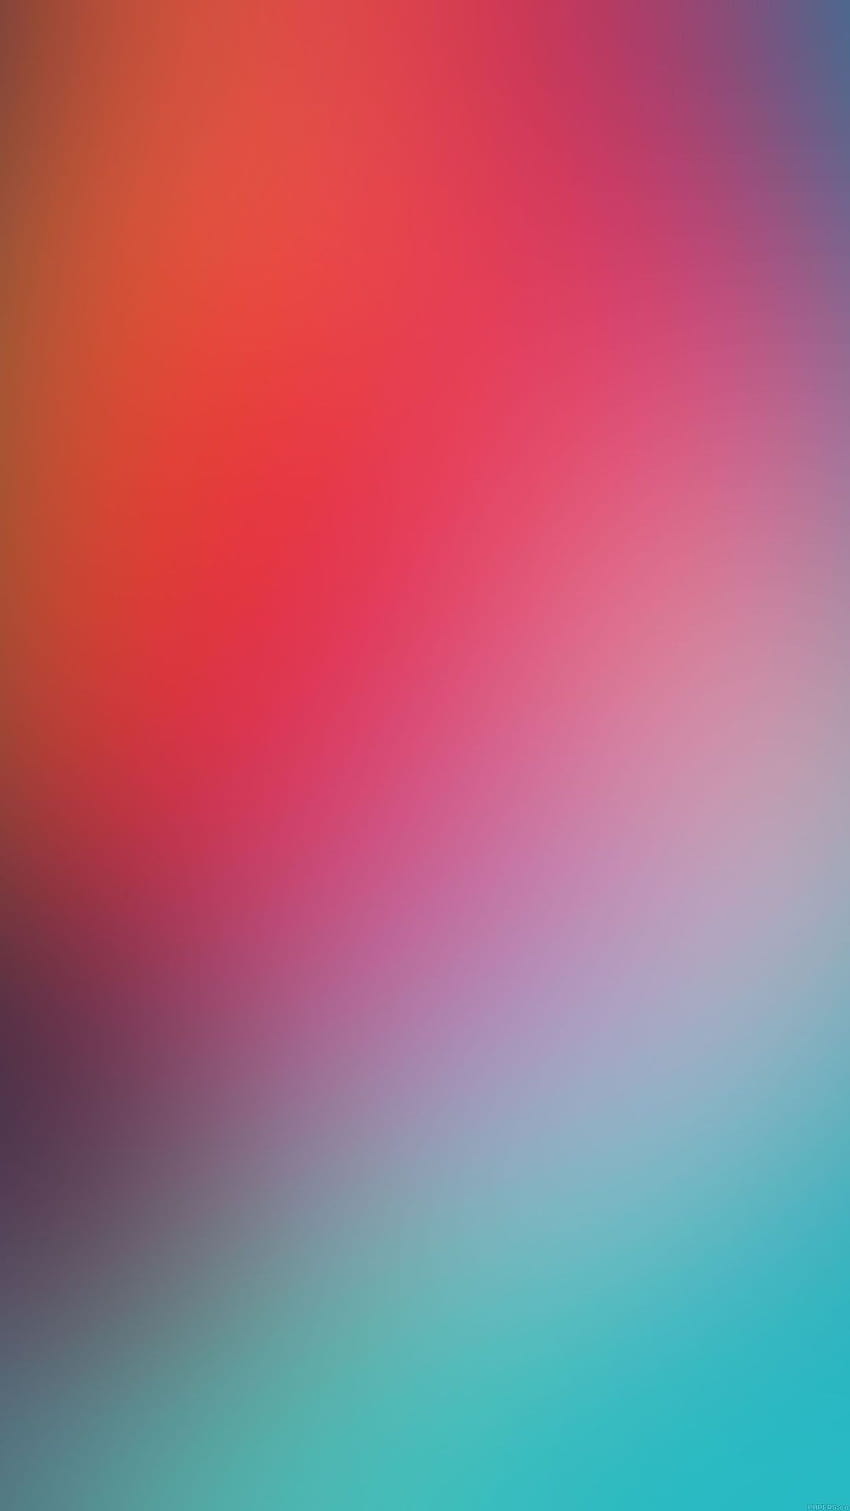 Đừng bỏ qua hình nền cho iPhone đẹp lung linh này, màu sắc tươi sáng, rực rỡ sẽ làm cho màn hình của bạn thêm sống động và phong phú hơn bao giờ hết.